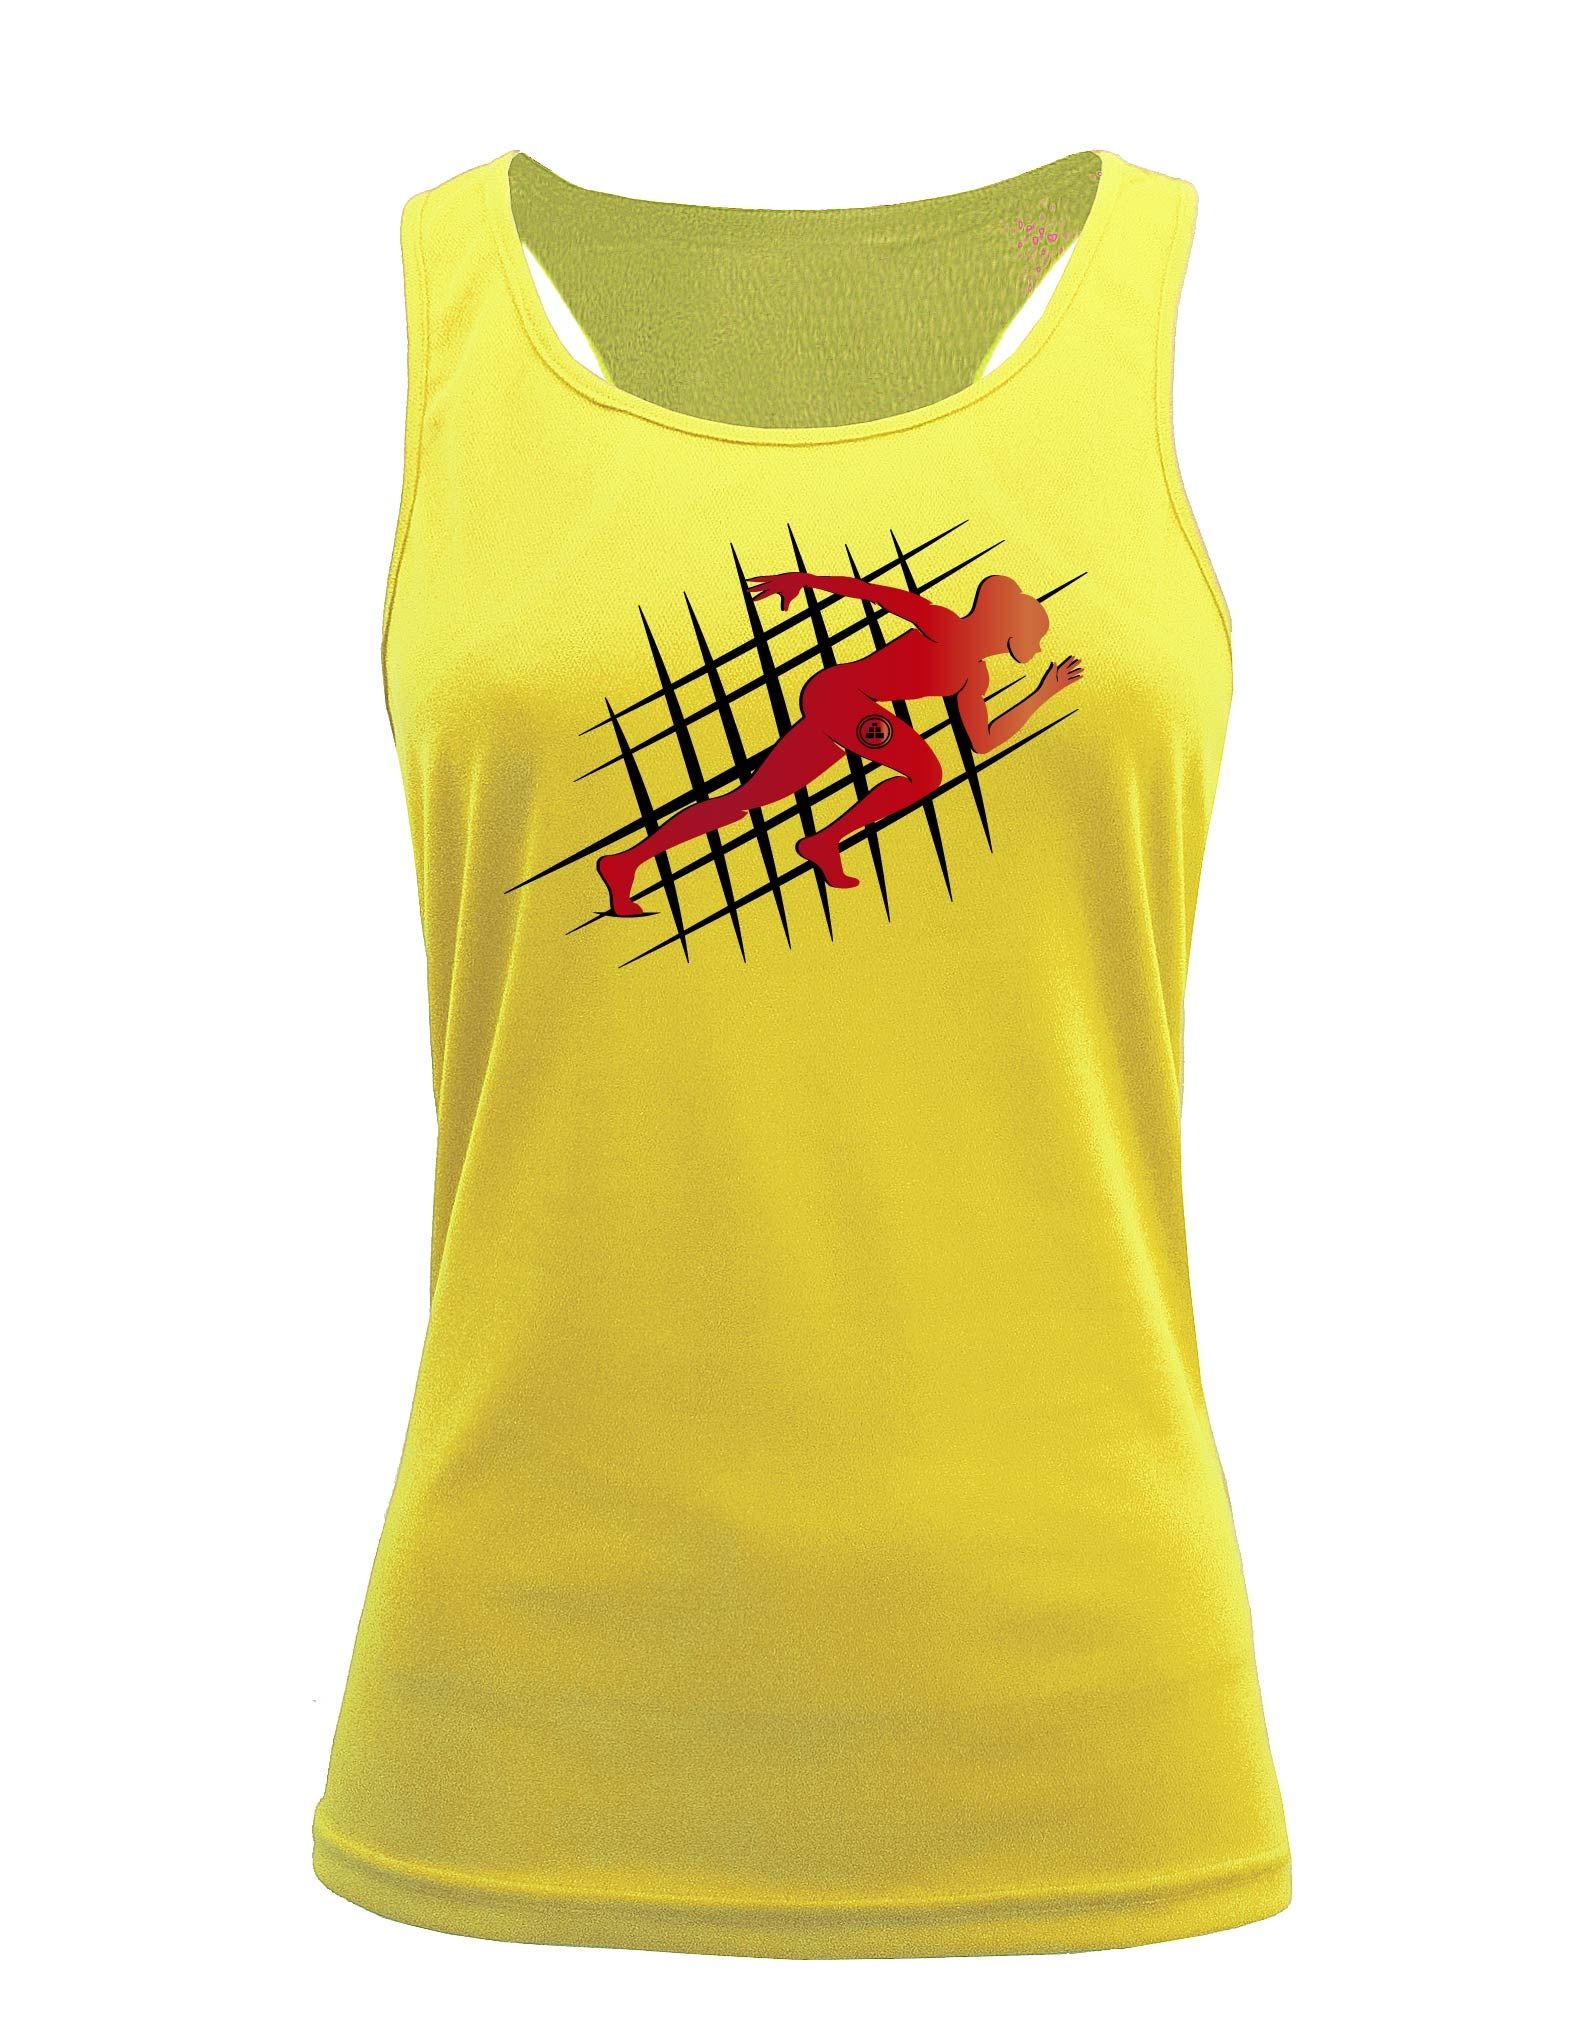 Camiseta fitness de tirantes running amarilla